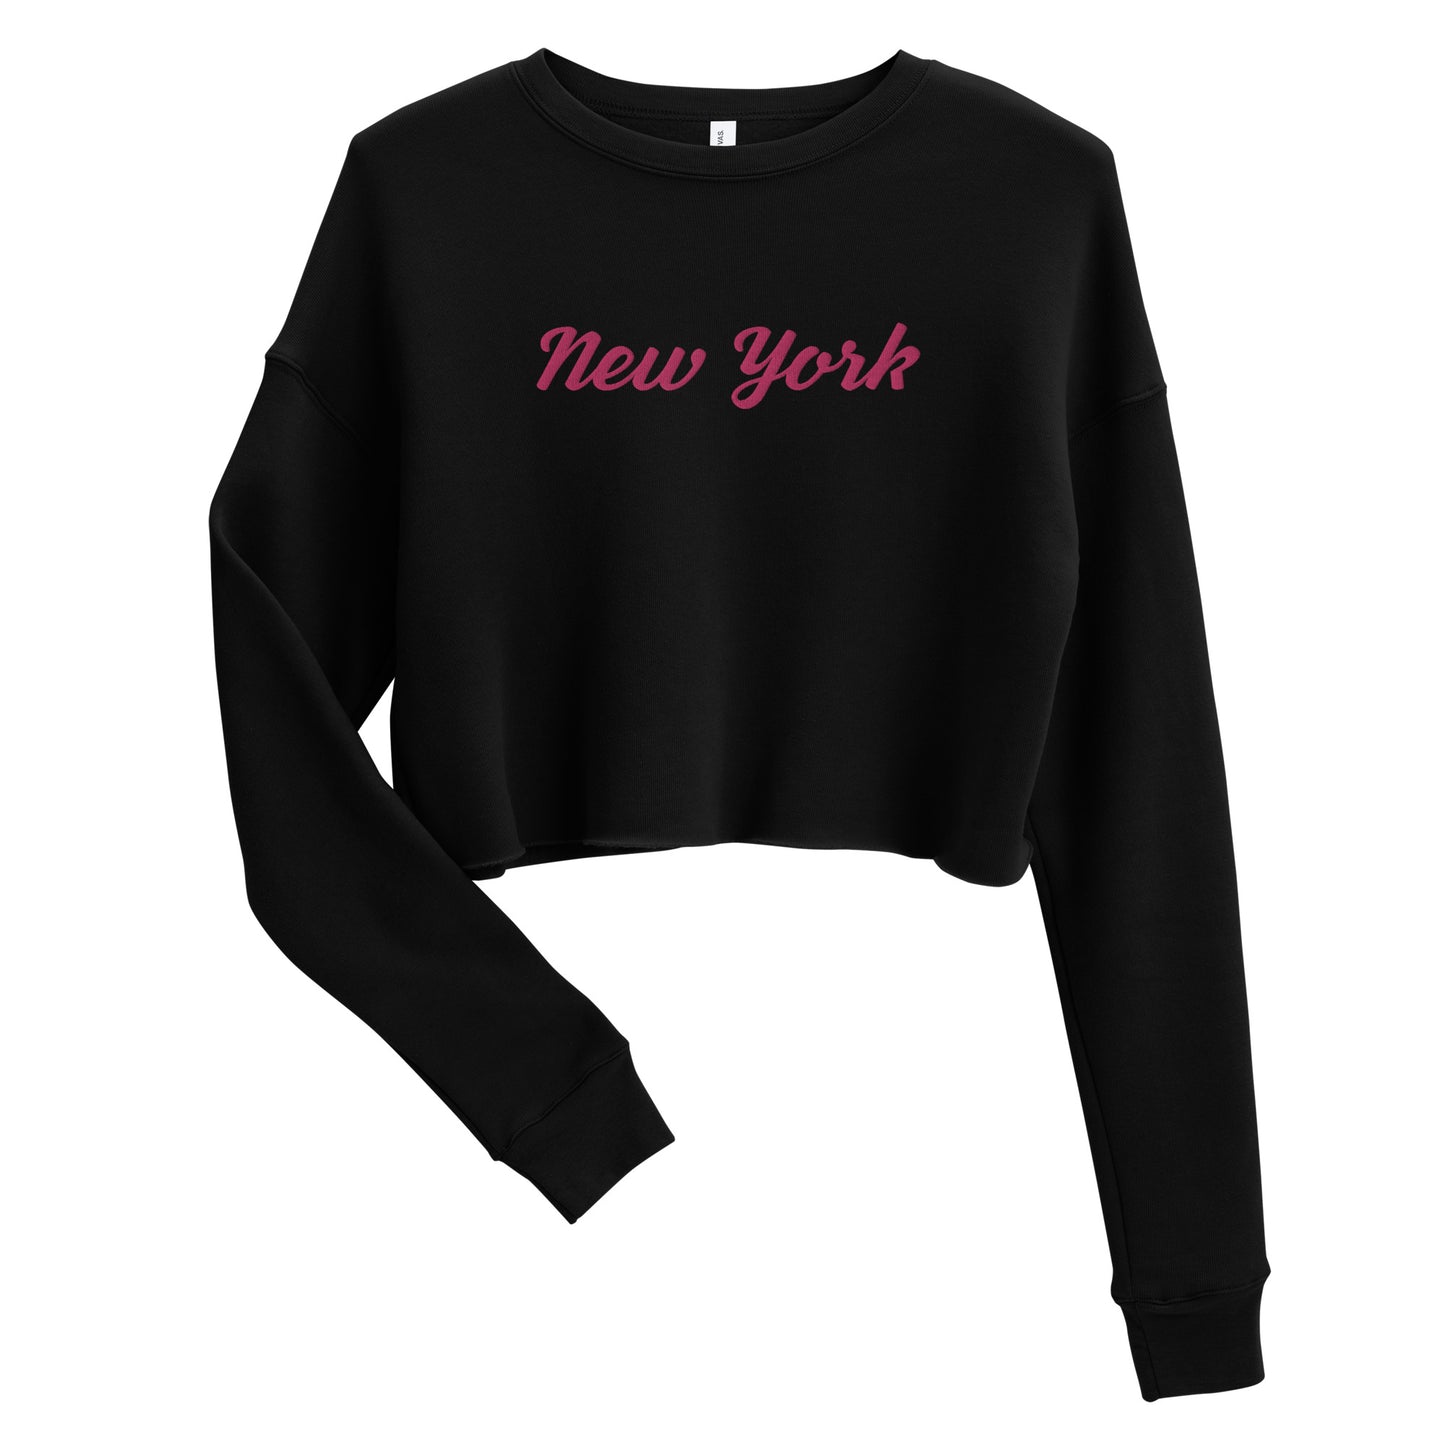 "New York" women's short crop sweatshirt